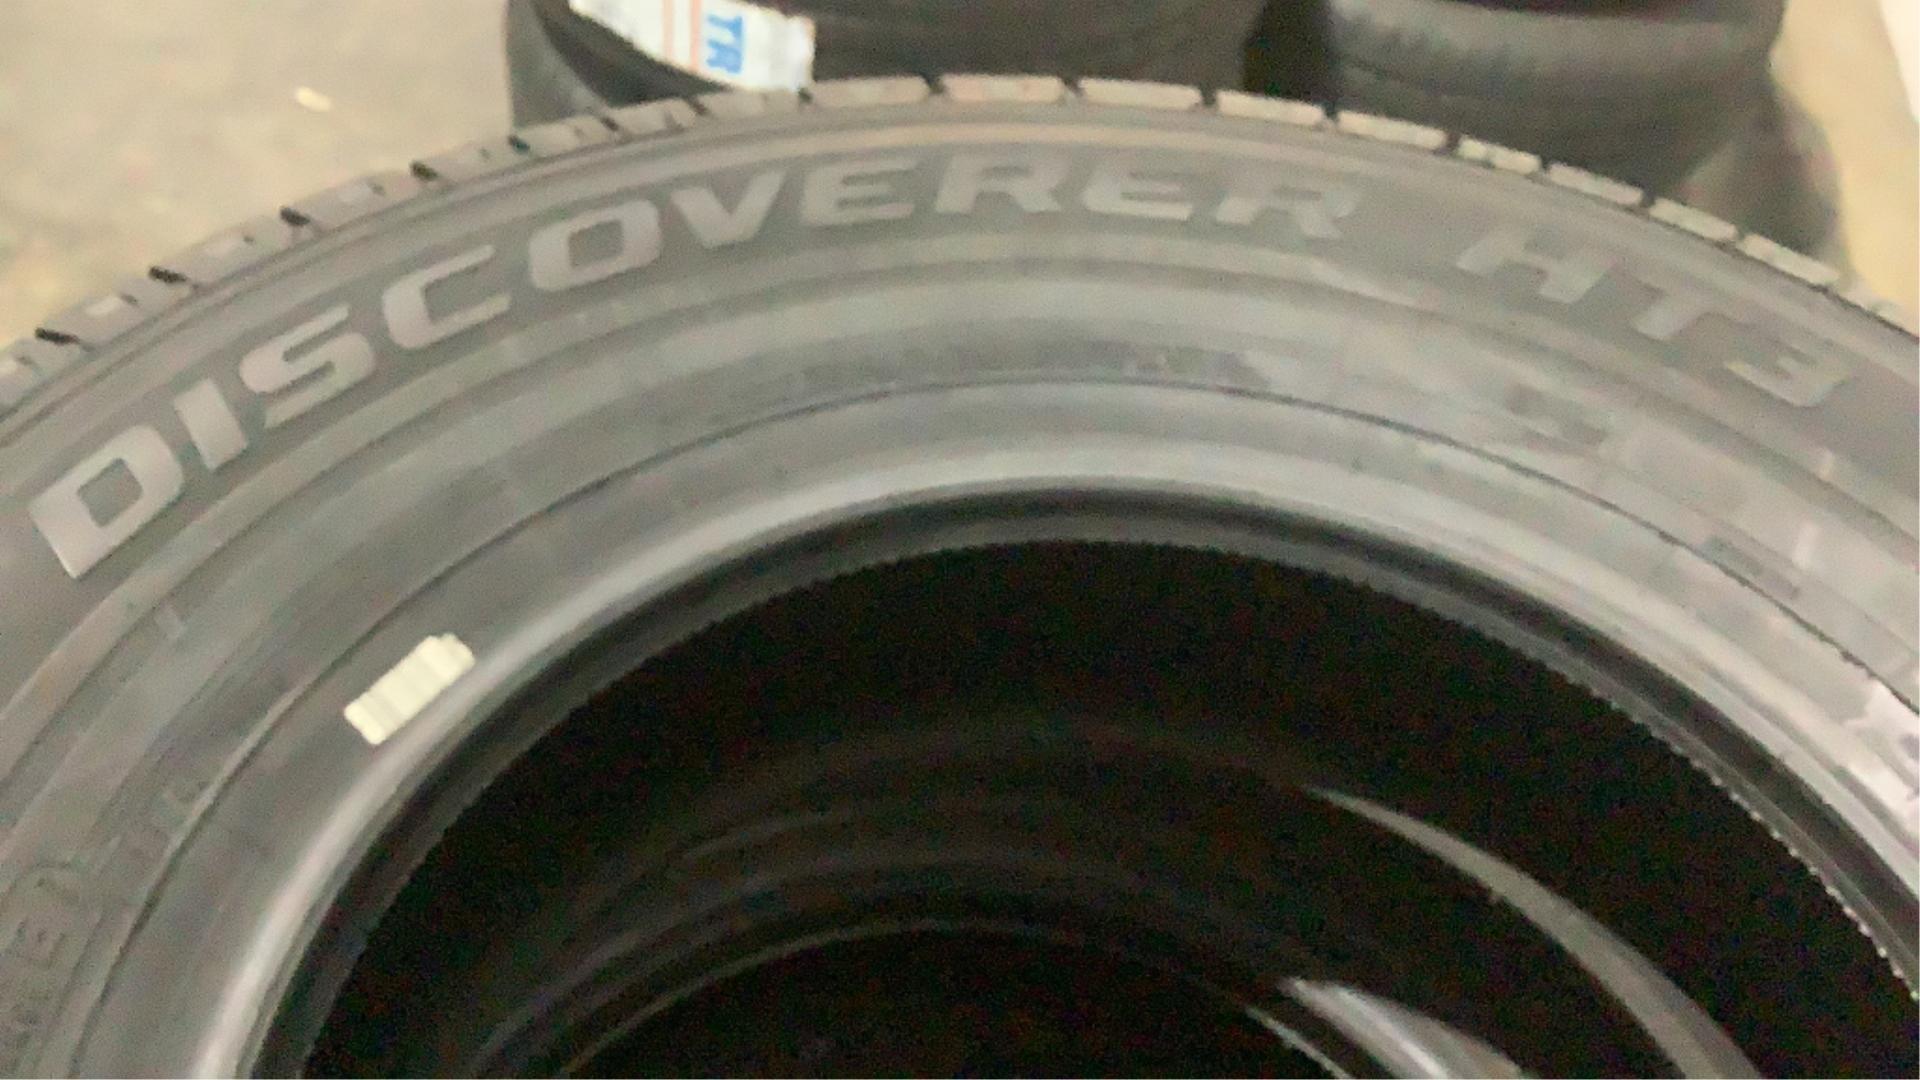 (4) Cooper LT245/75R16 Tires Discoverer HT3